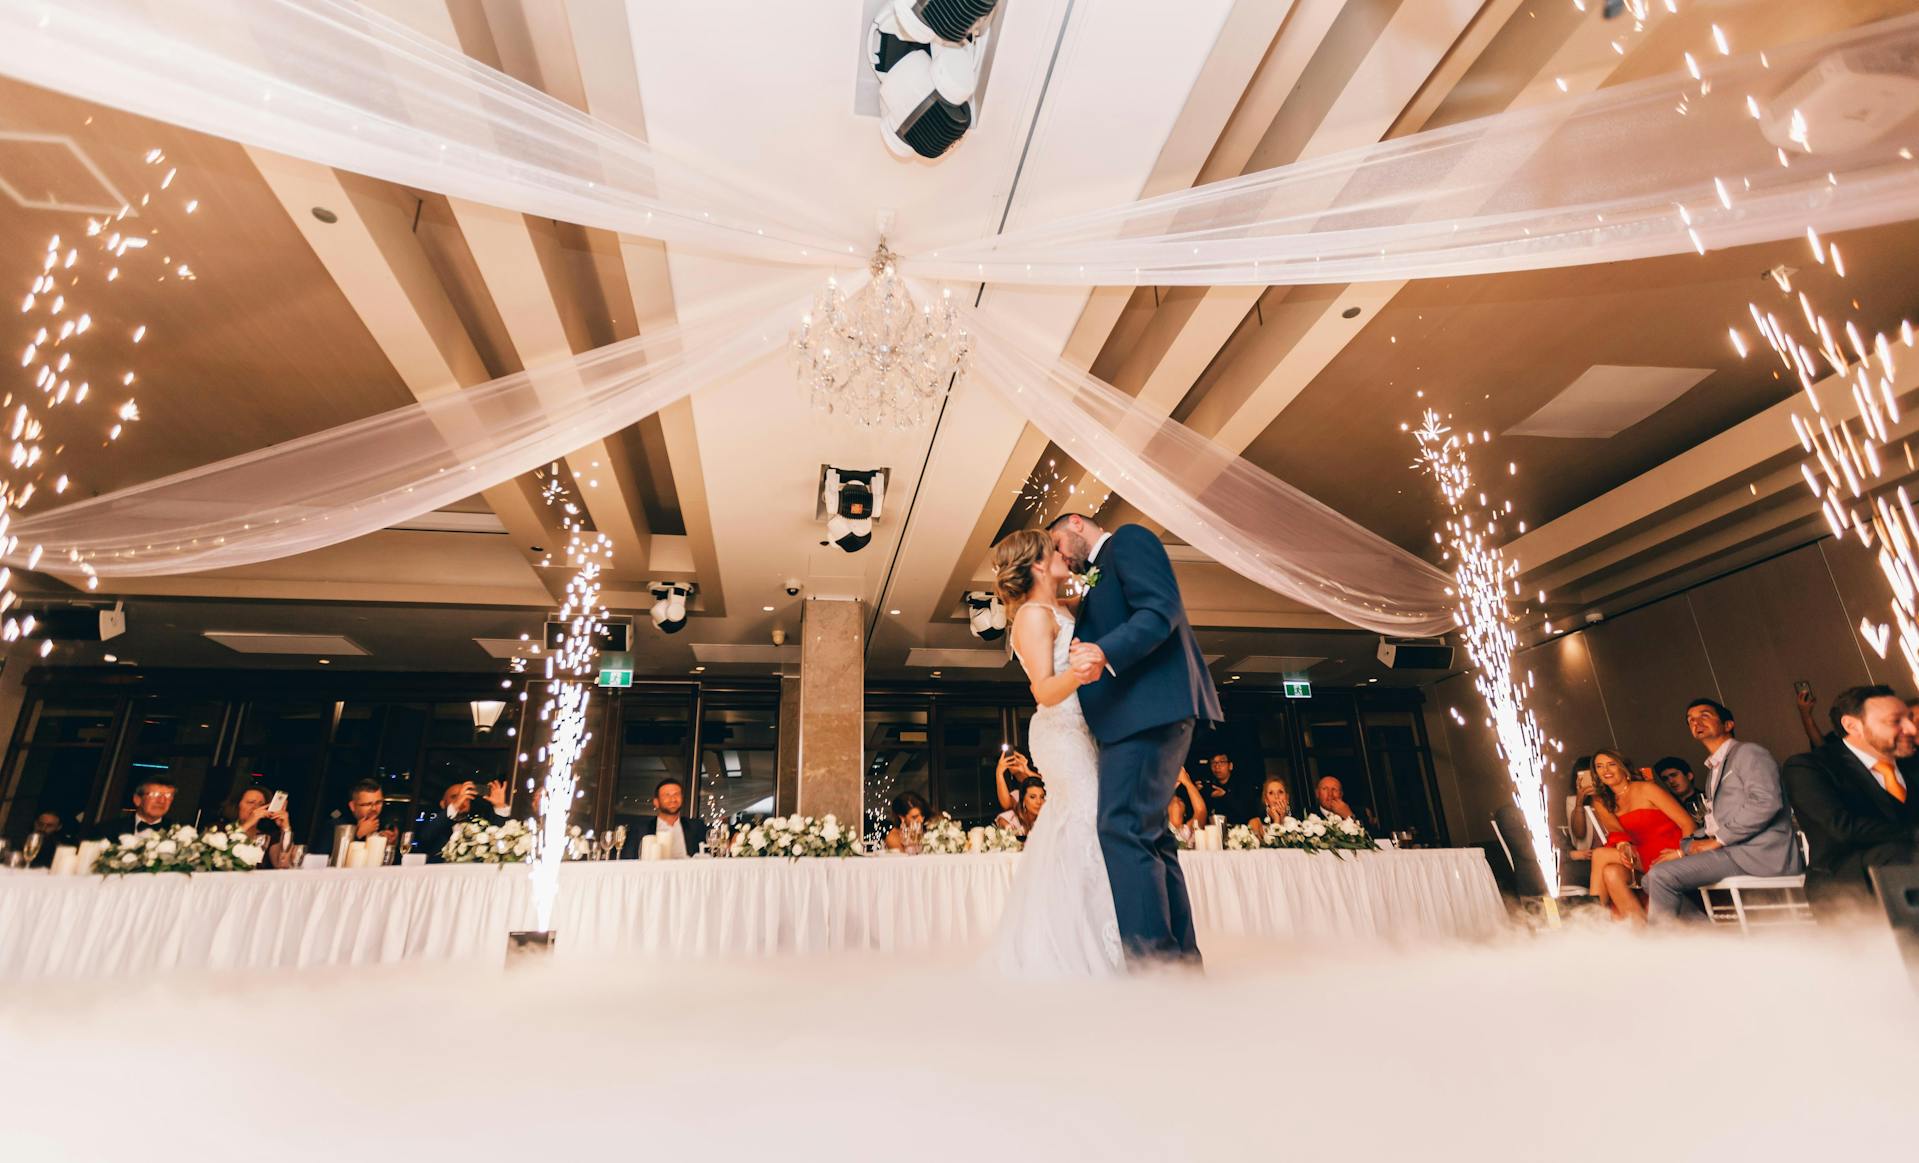 Un couple de mariés dansant lors d'une réception de mariage | Source : Pexels